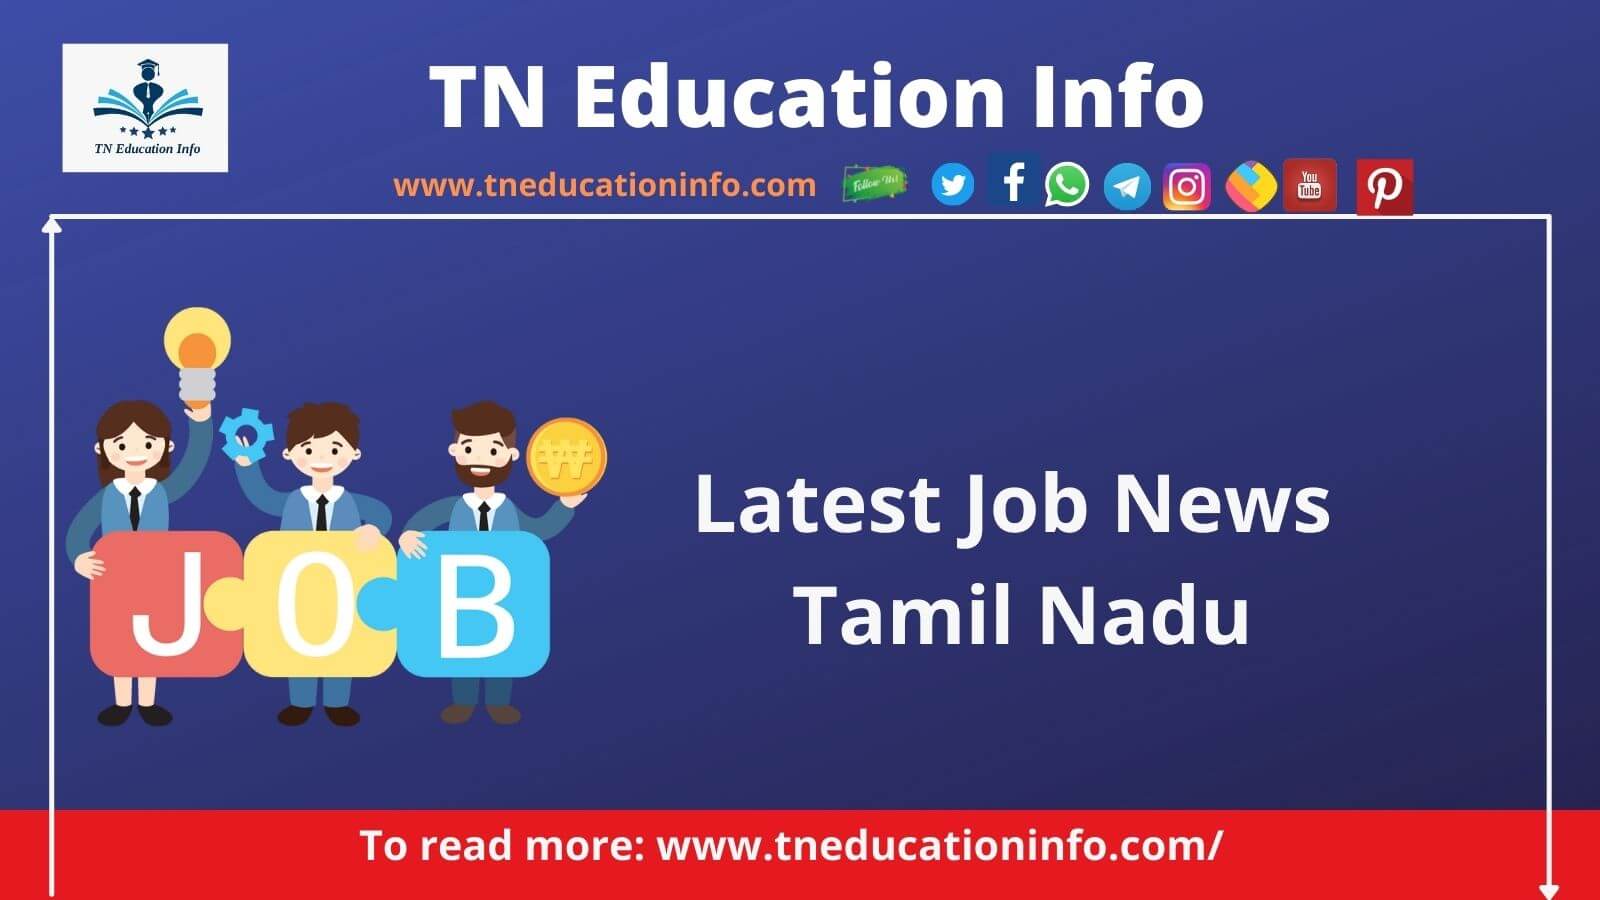 Latest Job News Tamil Nadu